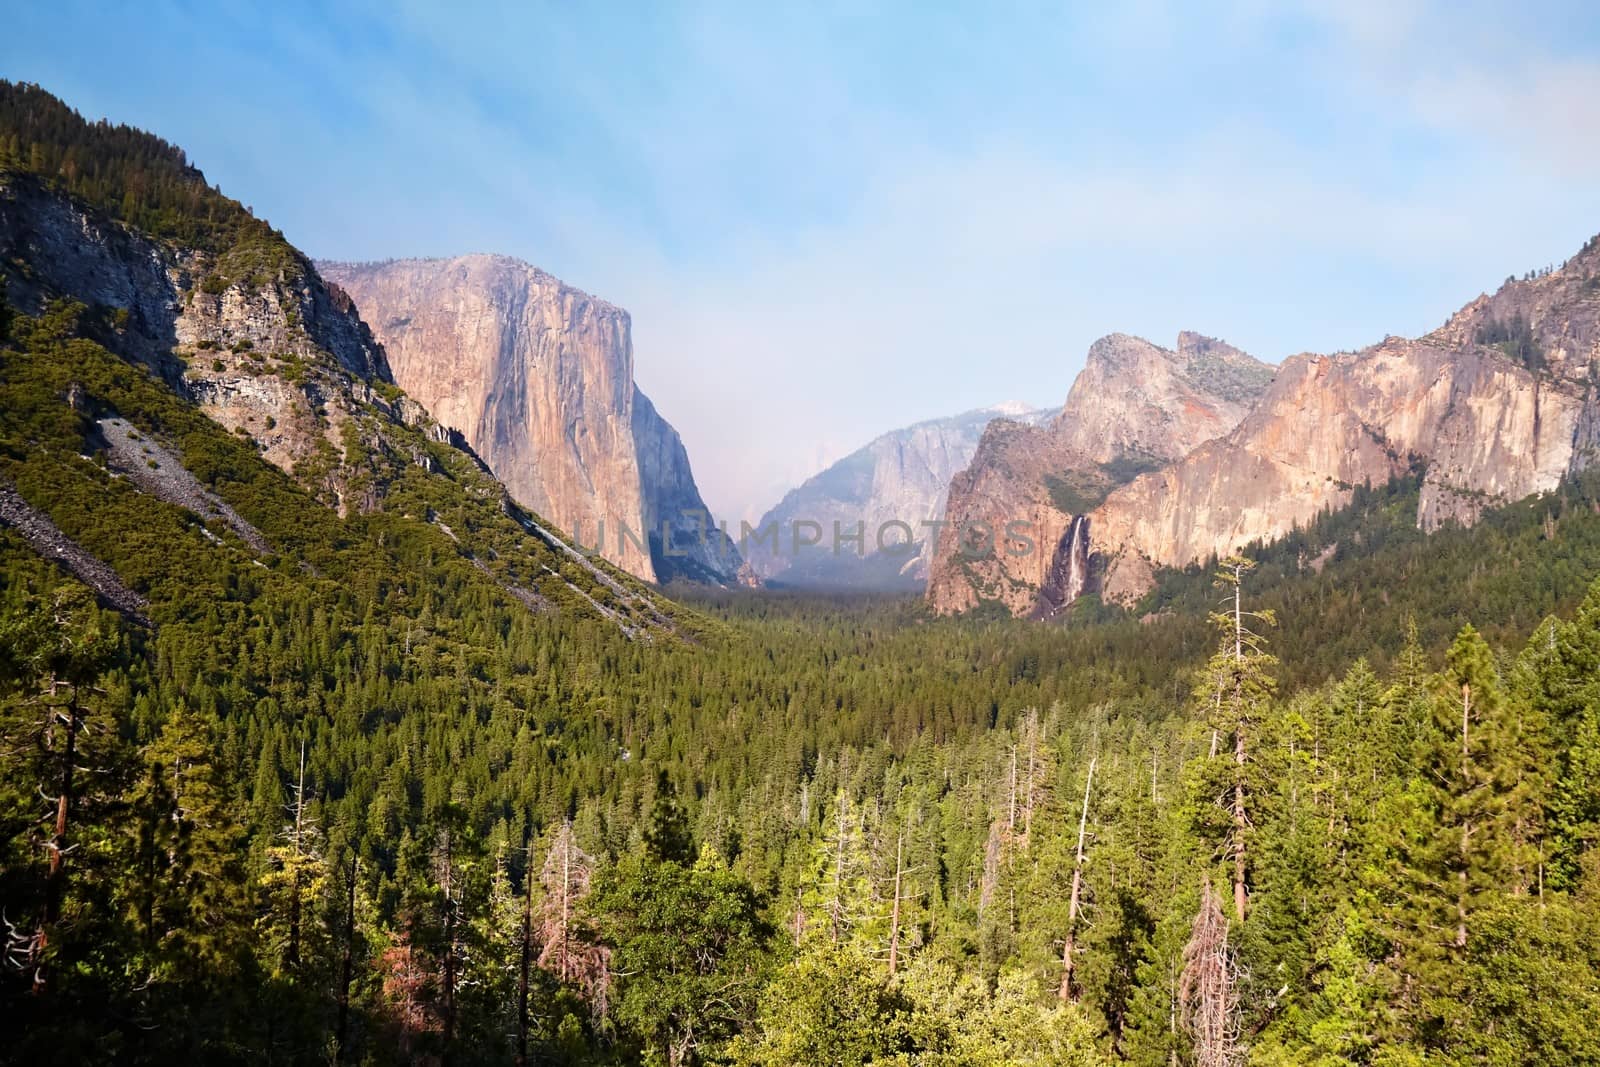 El Capitan, Yosemite Valley by LoonChild